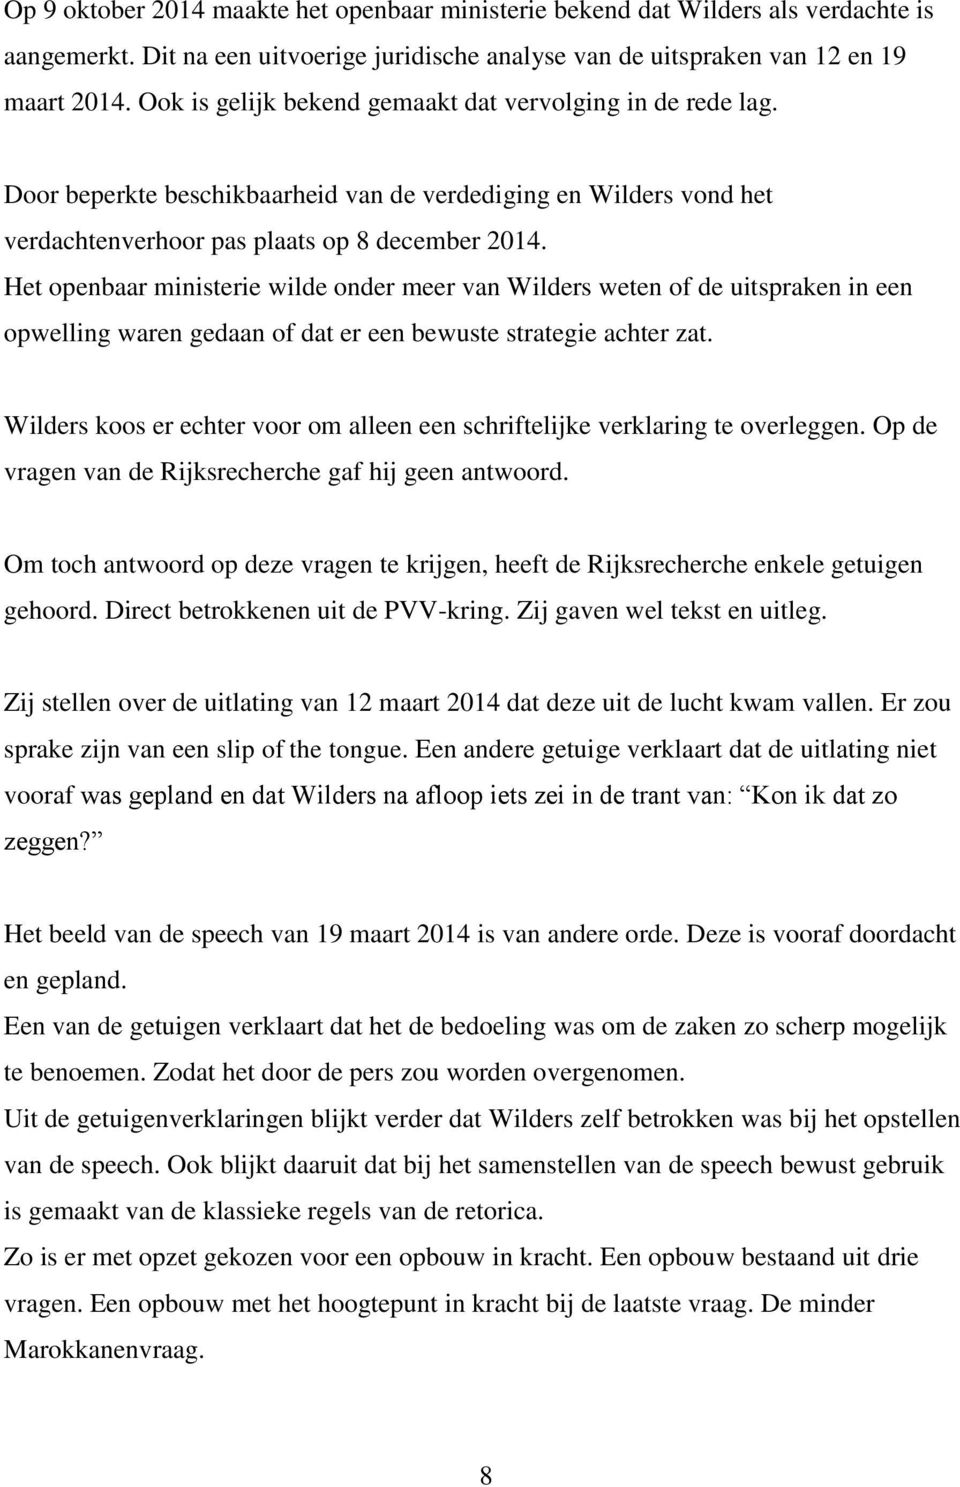 Het openbaar ministerie wilde onder meer van Wilders weten of de uitspraken in een opwelling waren gedaan of dat er een bewuste strategie achter zat.